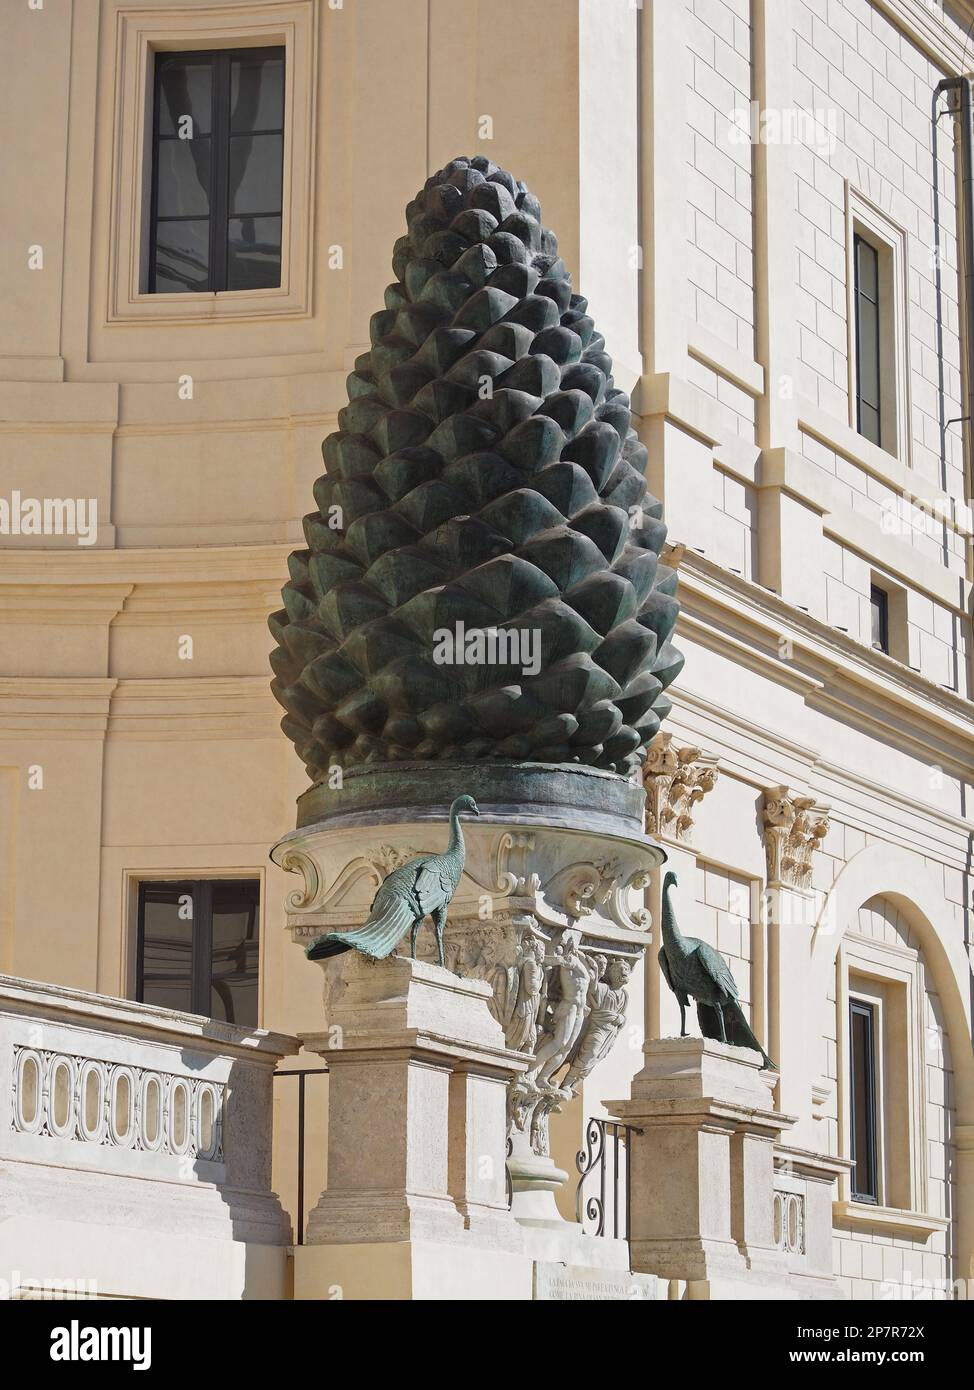 Fontana della Pigna est une pinecone romaine de bronze de 4m de haut qui a autrefois fait joigner l'eau du sommet. Il occupe maintenant une vaste niche dans un mur du Vatican. Banque D'Images